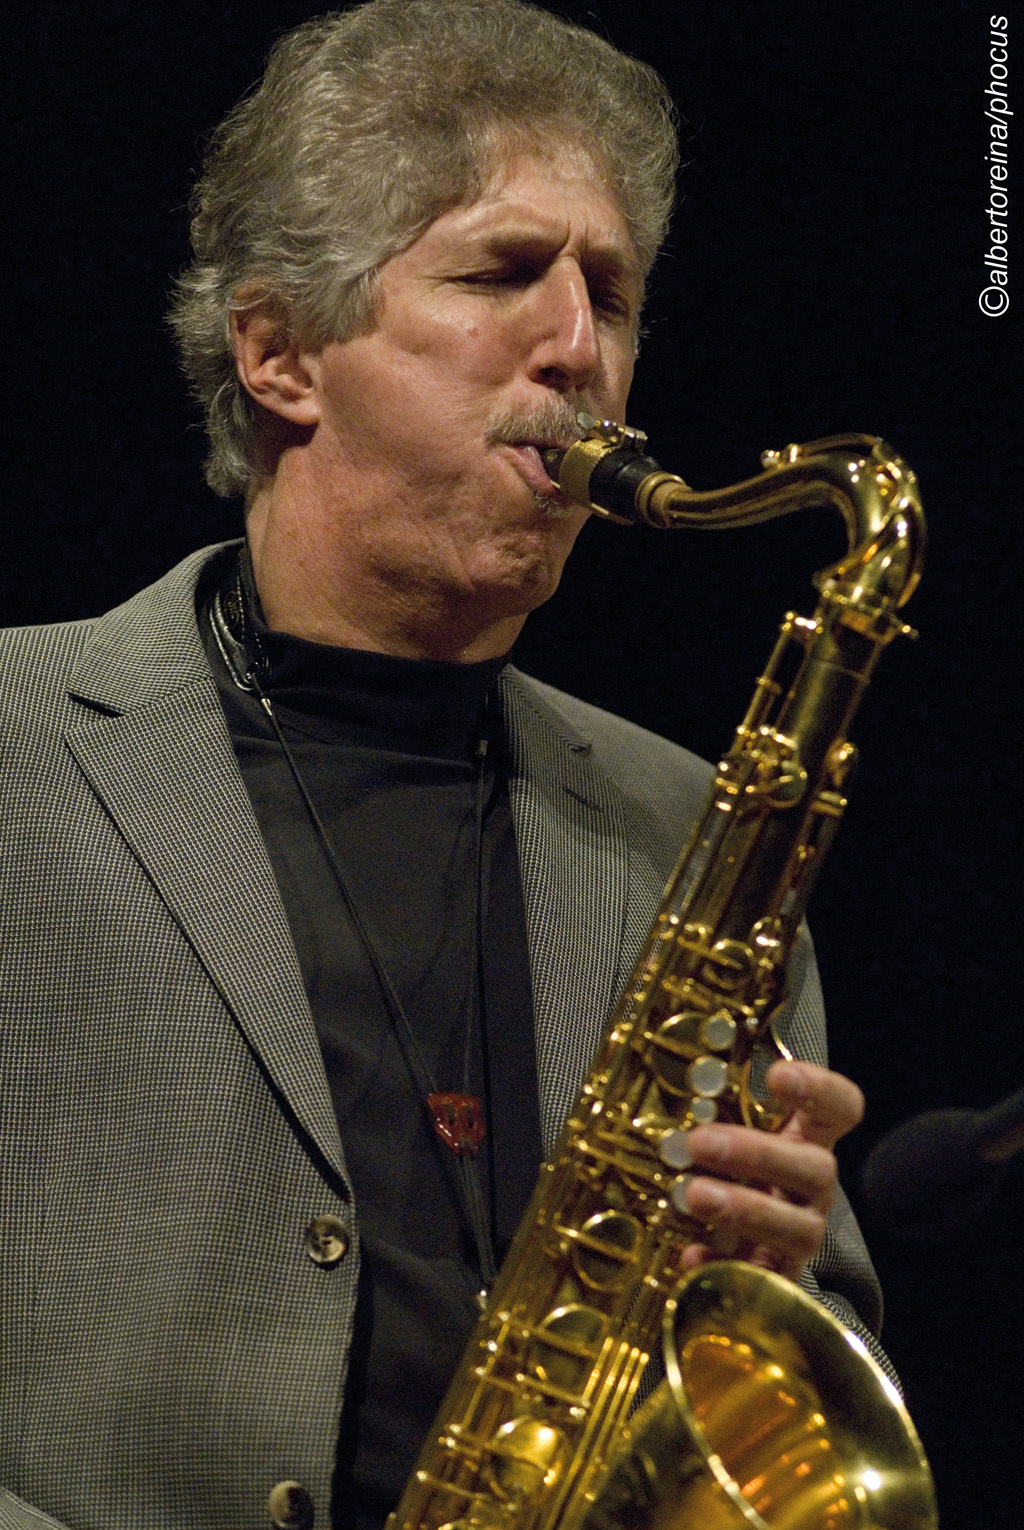 Ein Mann, der Saxophon spielt.